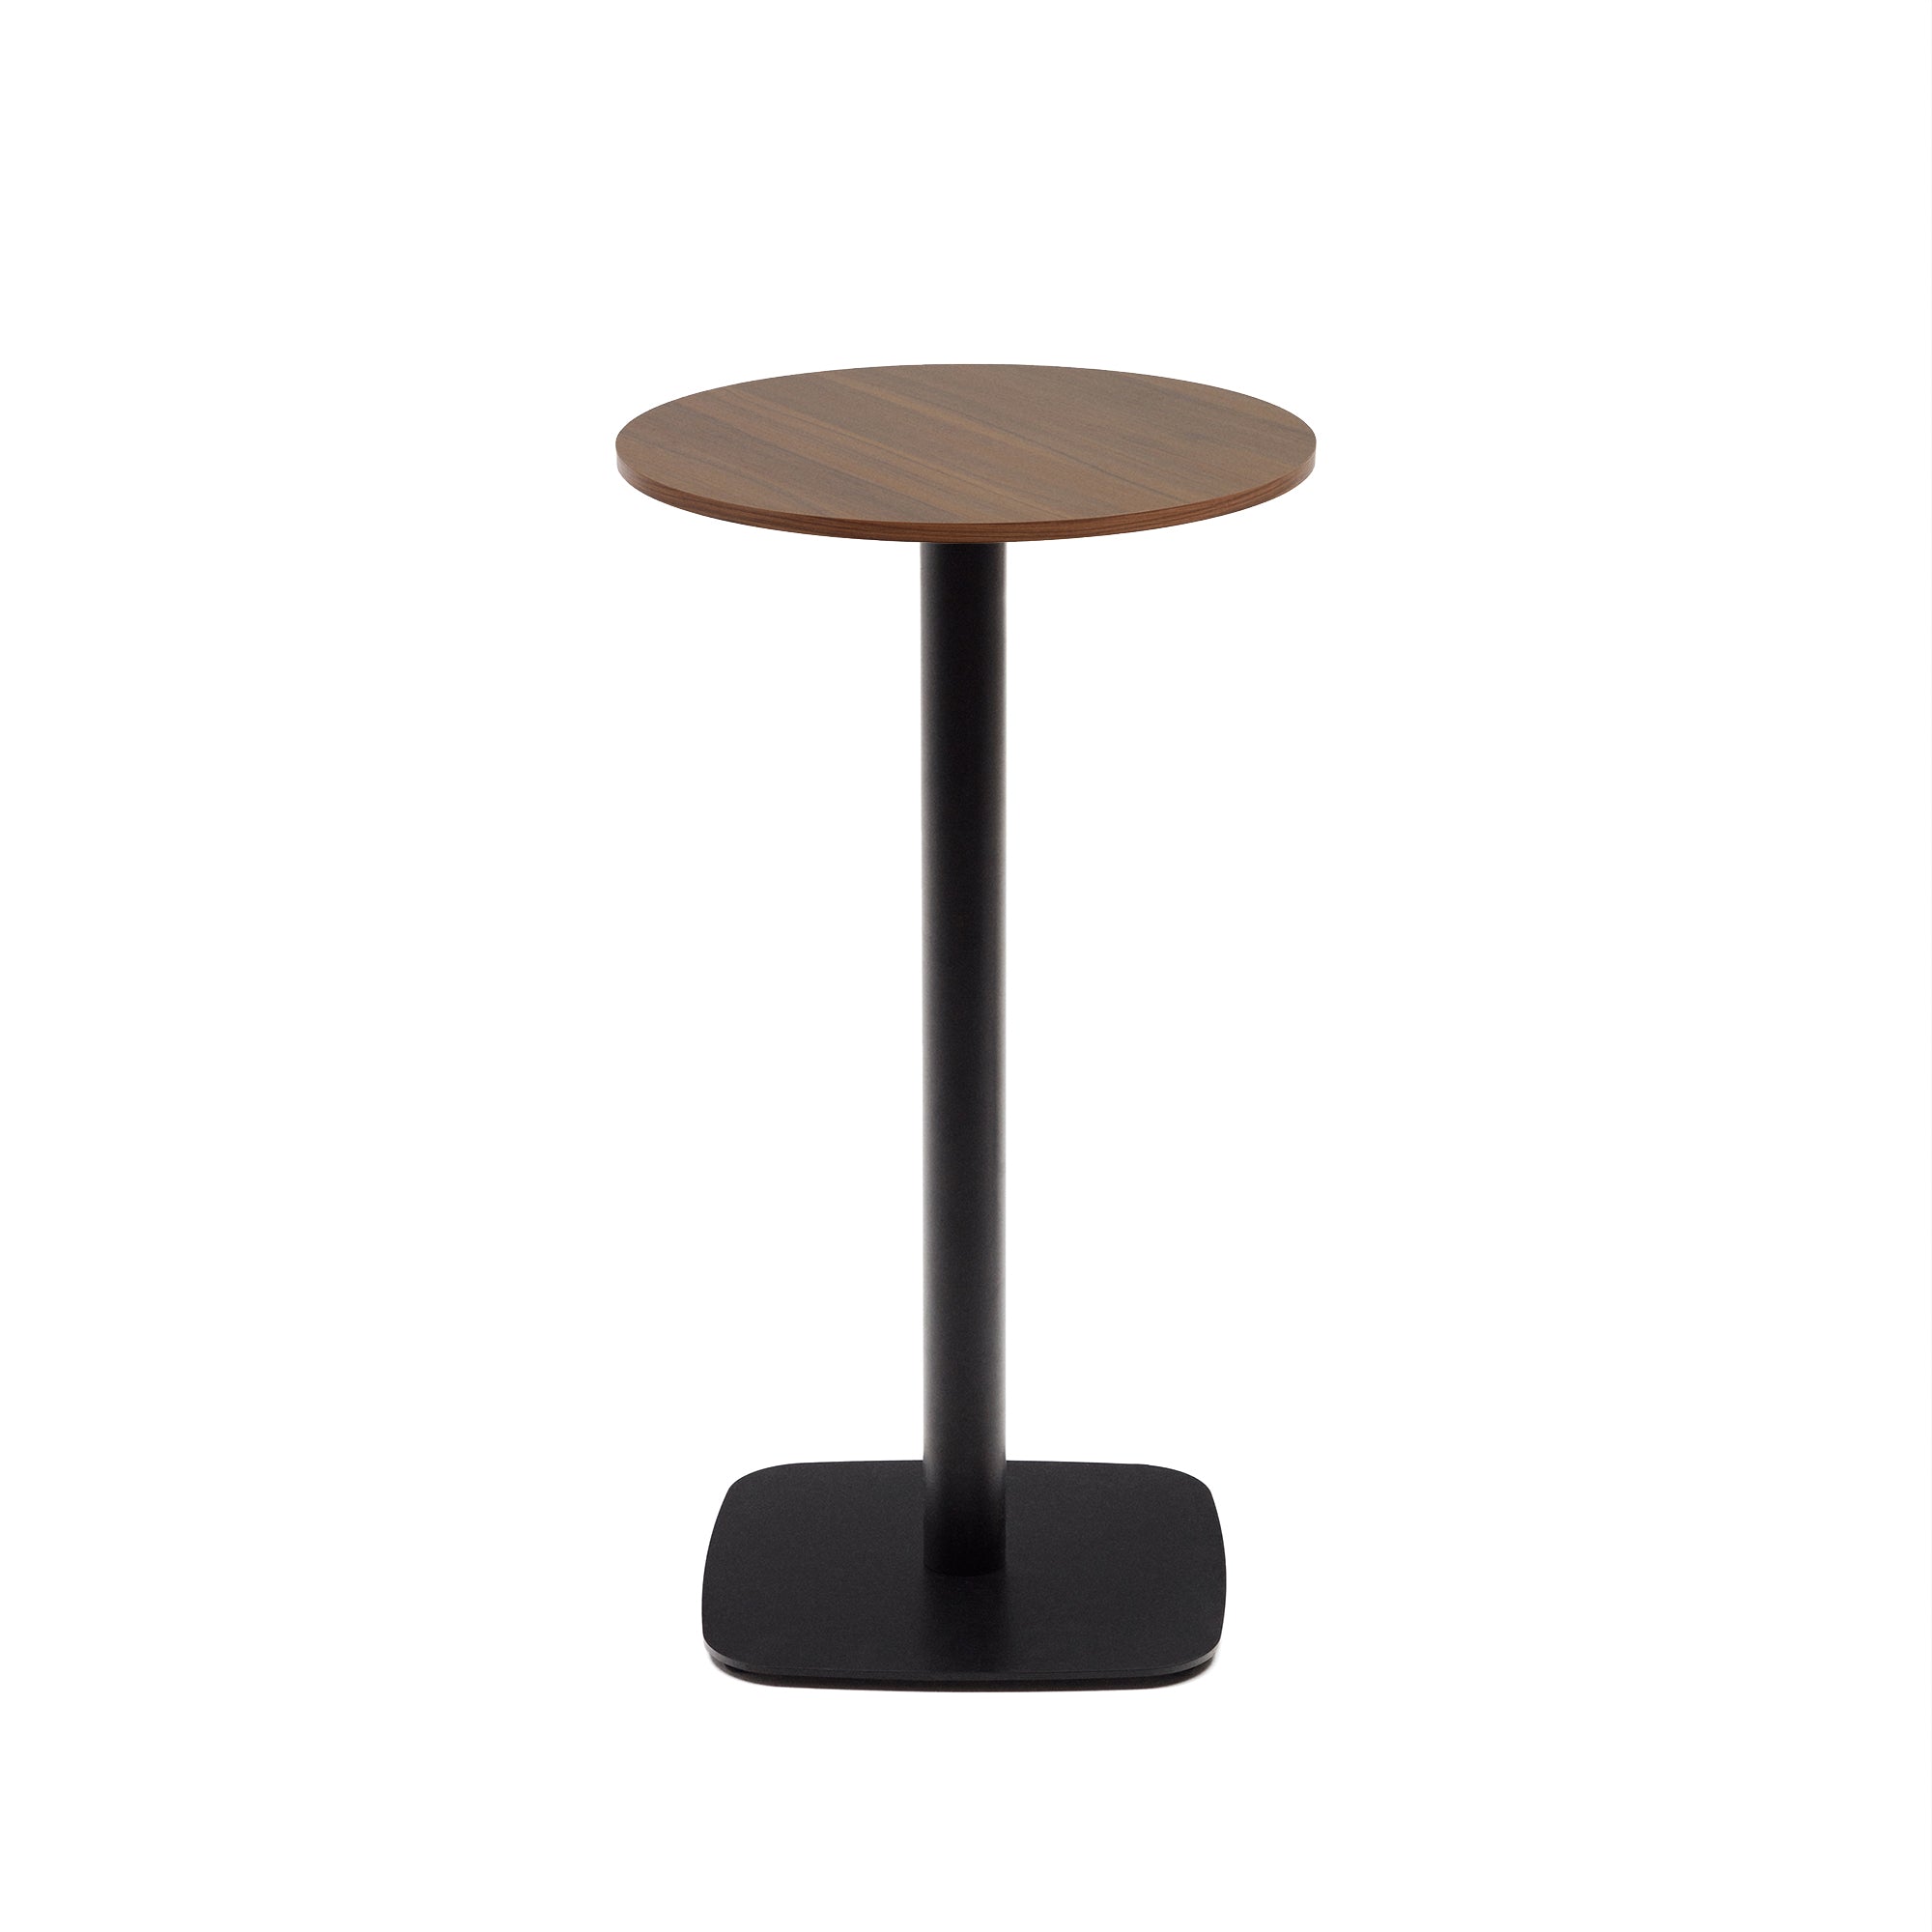 Dina magas kerek asztal, diófa melaminból, fekete festett fémlábbal, Ø60x96 cm, Ø60x96 cm